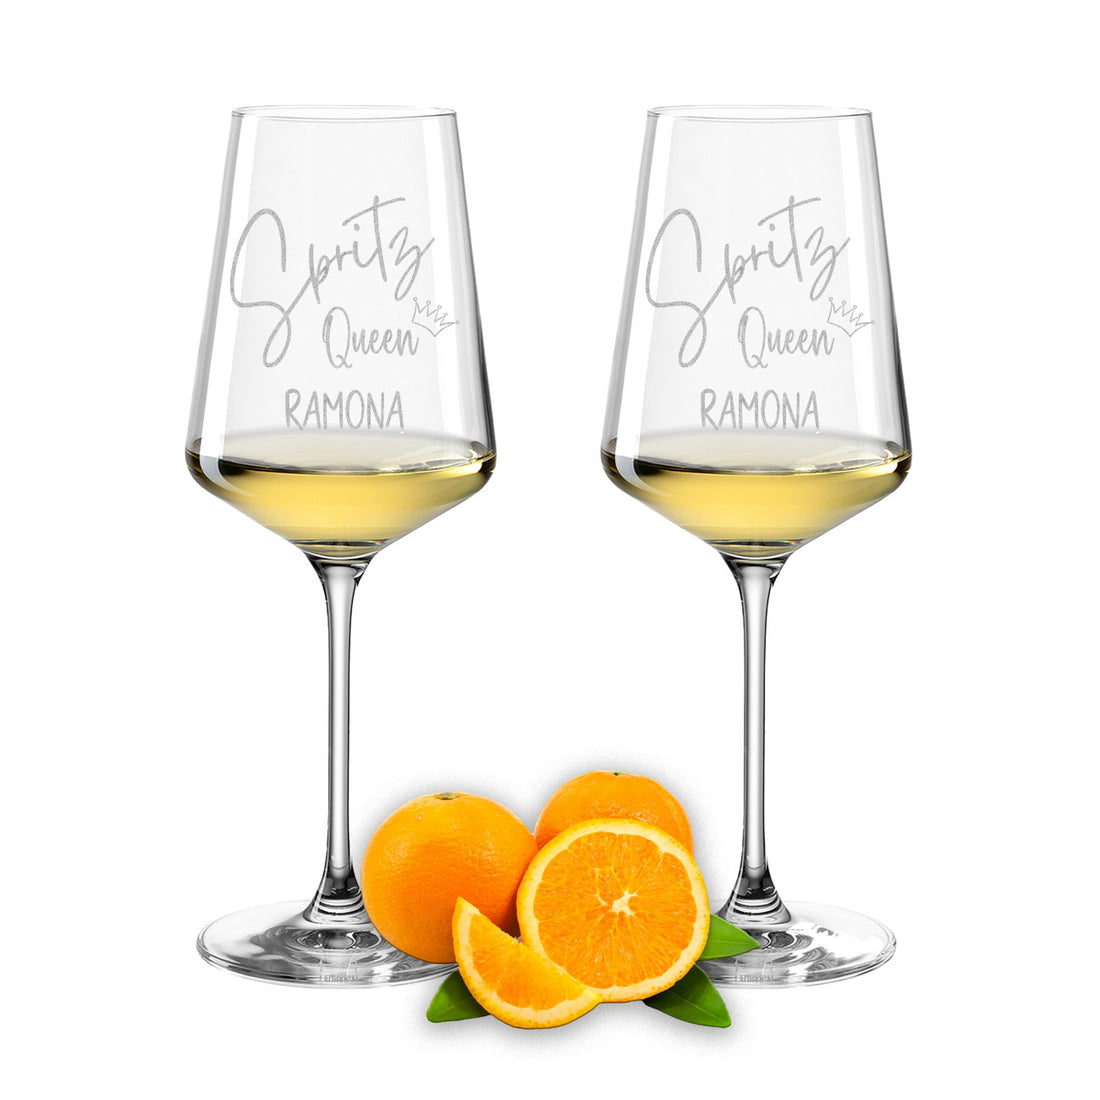 Weinglas mit Gravur Leonardo Puccini "SPRITZ QUEEN" 2 Gläser mit Wunschname